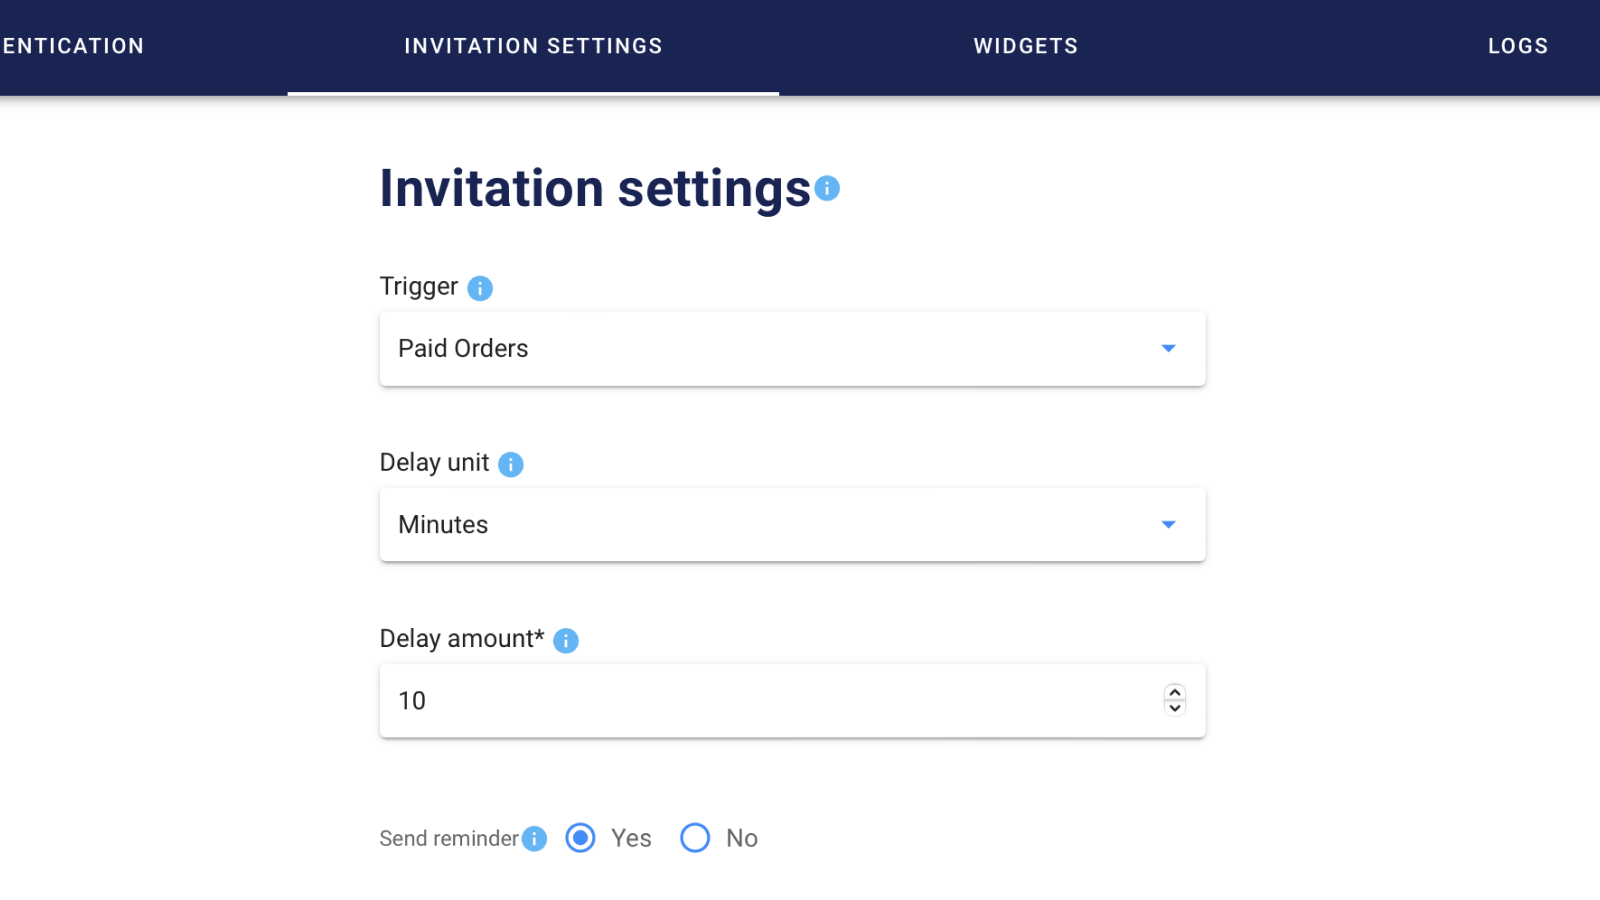 Invitation settings